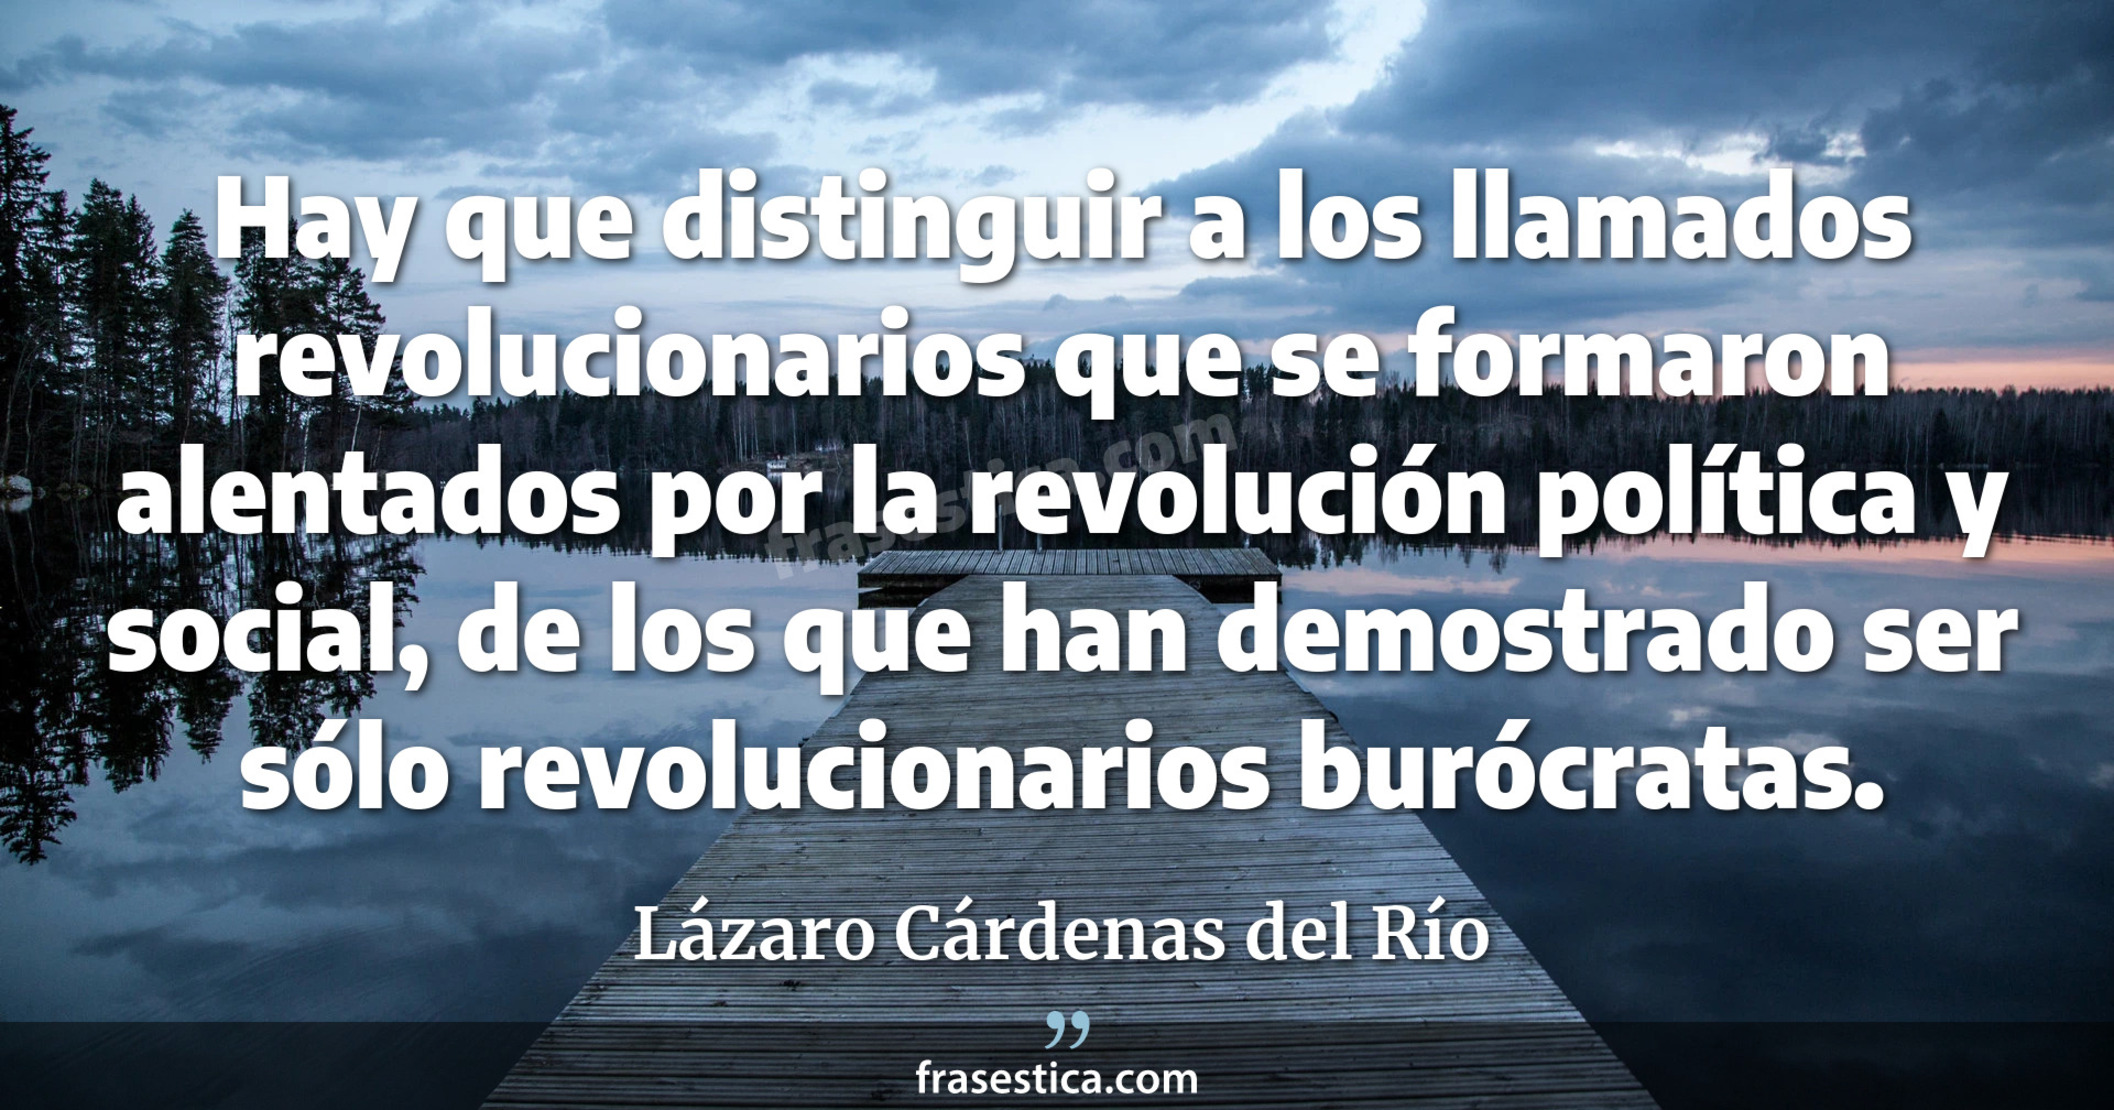 Hay que distinguir a los llamados revolucionarios que se formaron alentados por la revolución política y social, de los que han demostrado ser sólo revolucionarios burócratas. - Lázaro Cárdenas del Río